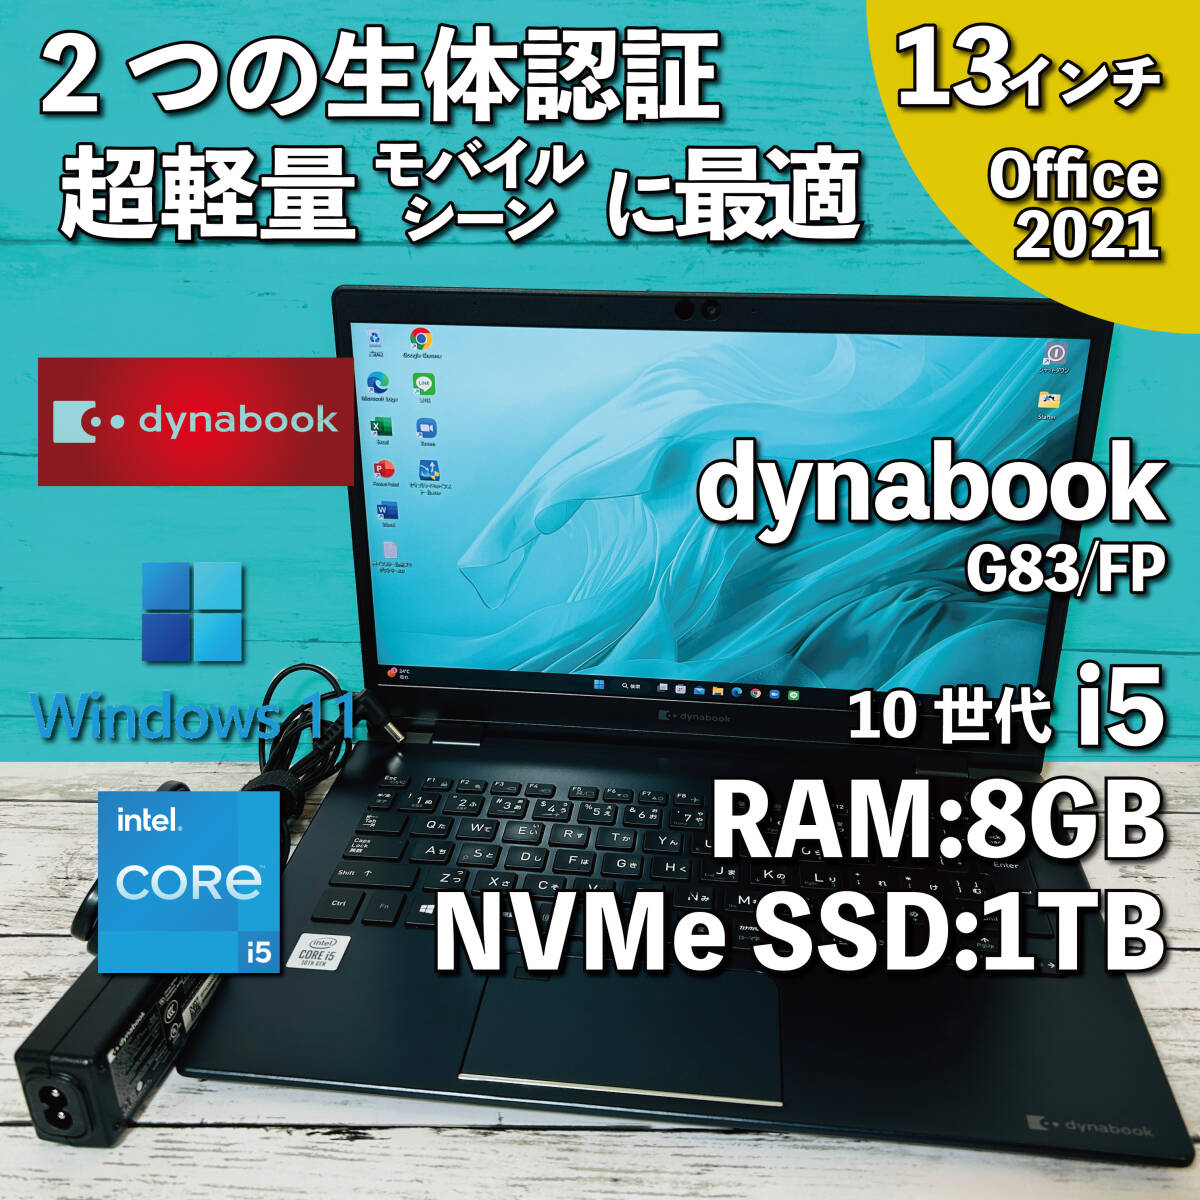 @044【超軽量モバイルシーンに最適/バッテリー良好】dynabook G83/FP/ i5-10210U/ メモリ8GB/ 新品 1TB SSD NVMe/ 13.3インチ/ Office2021